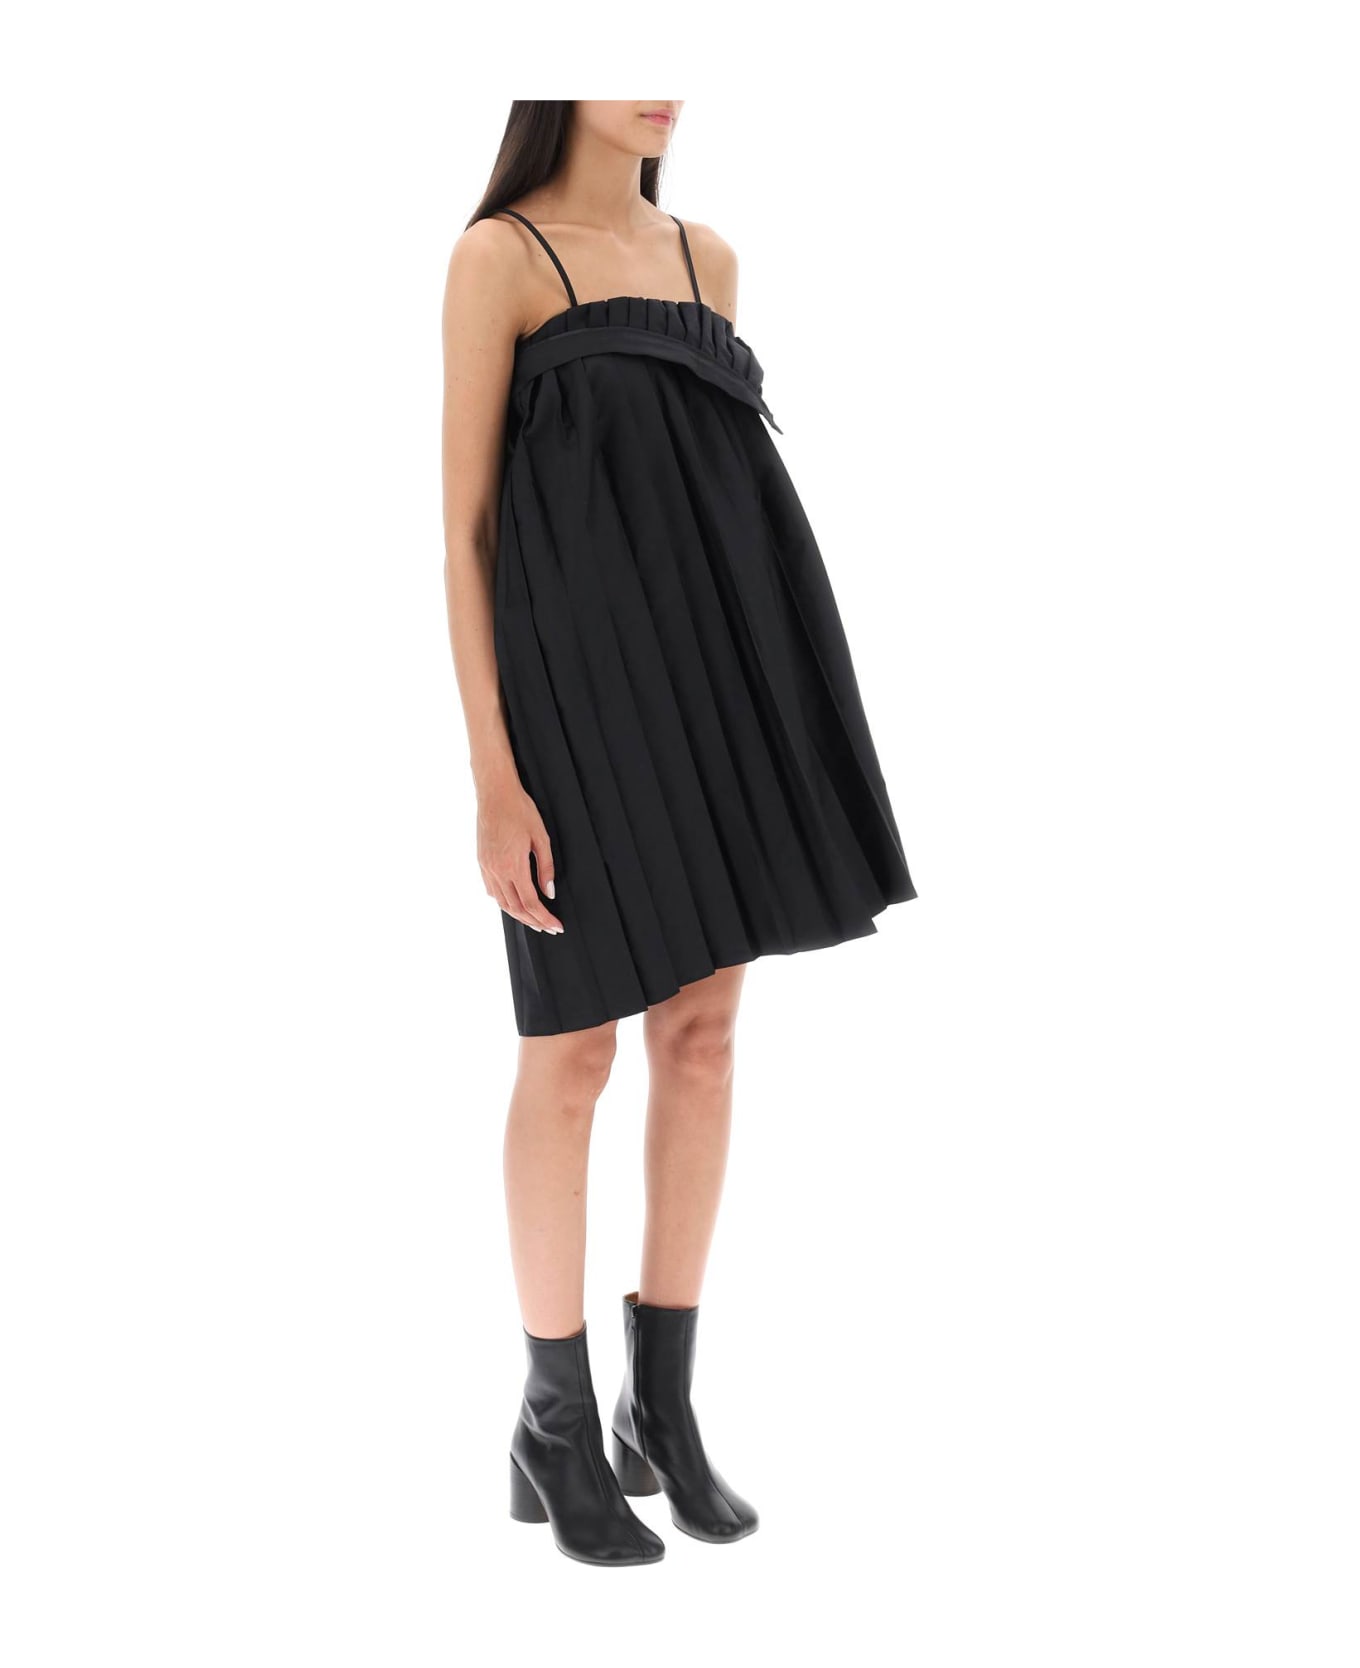 MM6 Maison Margiela Trompe L'oeil Pleated Mini Dress - Black